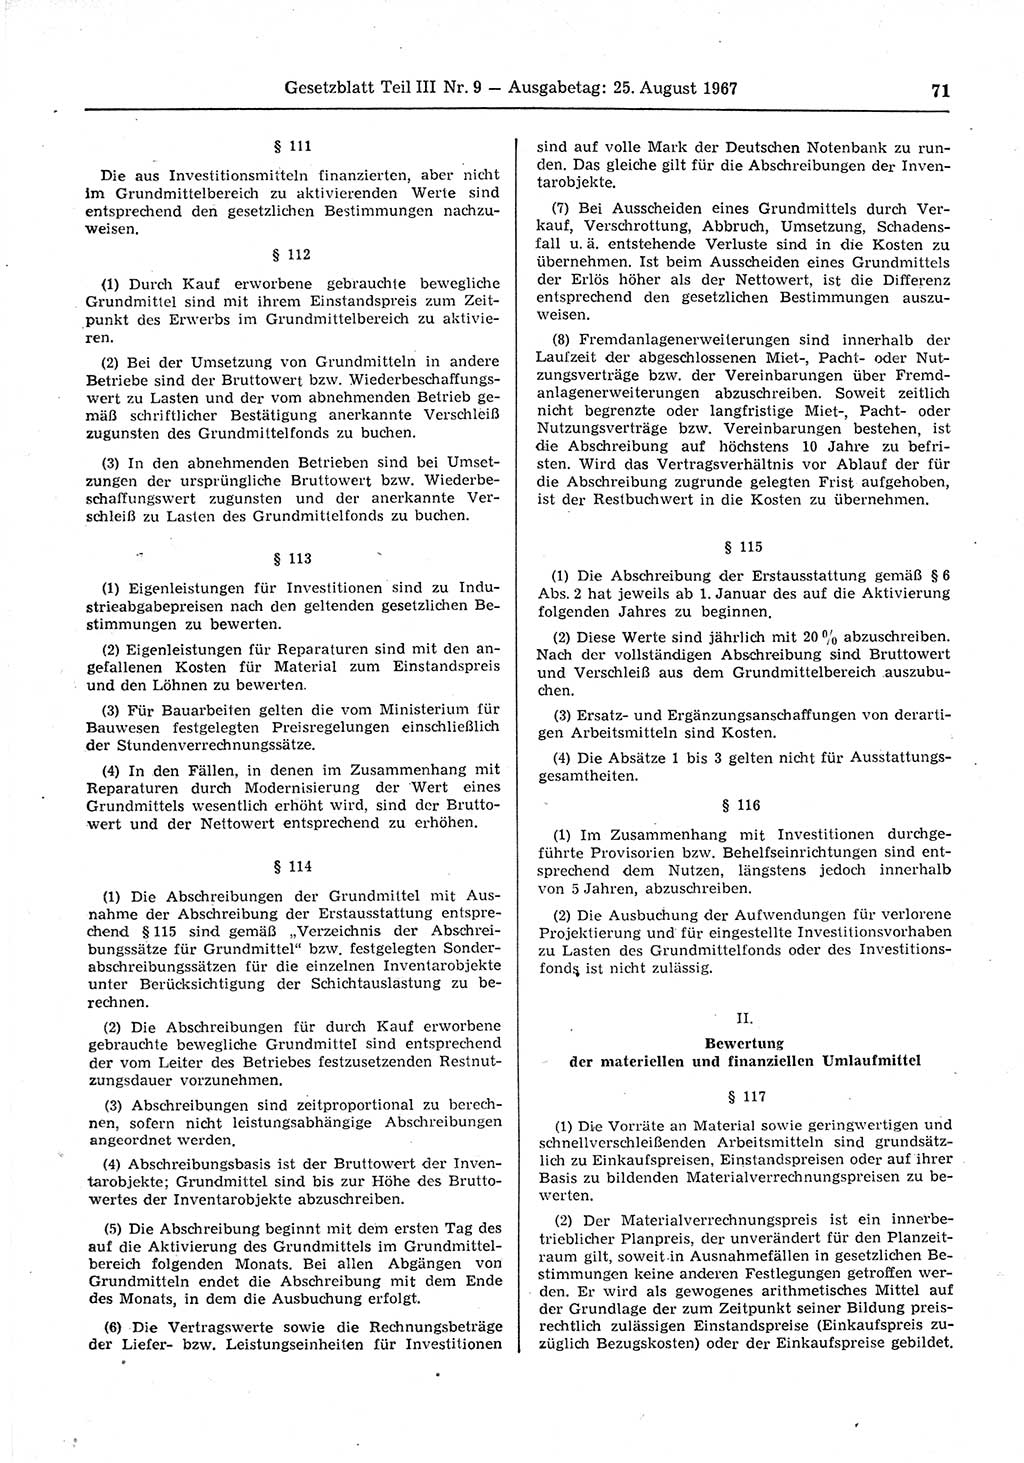 Gesetzblatt (GBl.) der Deutschen Demokratischen Republik (DDR) Teil ⅠⅠⅠ 1967, Seite 71 (GBl. DDR ⅠⅠⅠ 1967, S. 71)